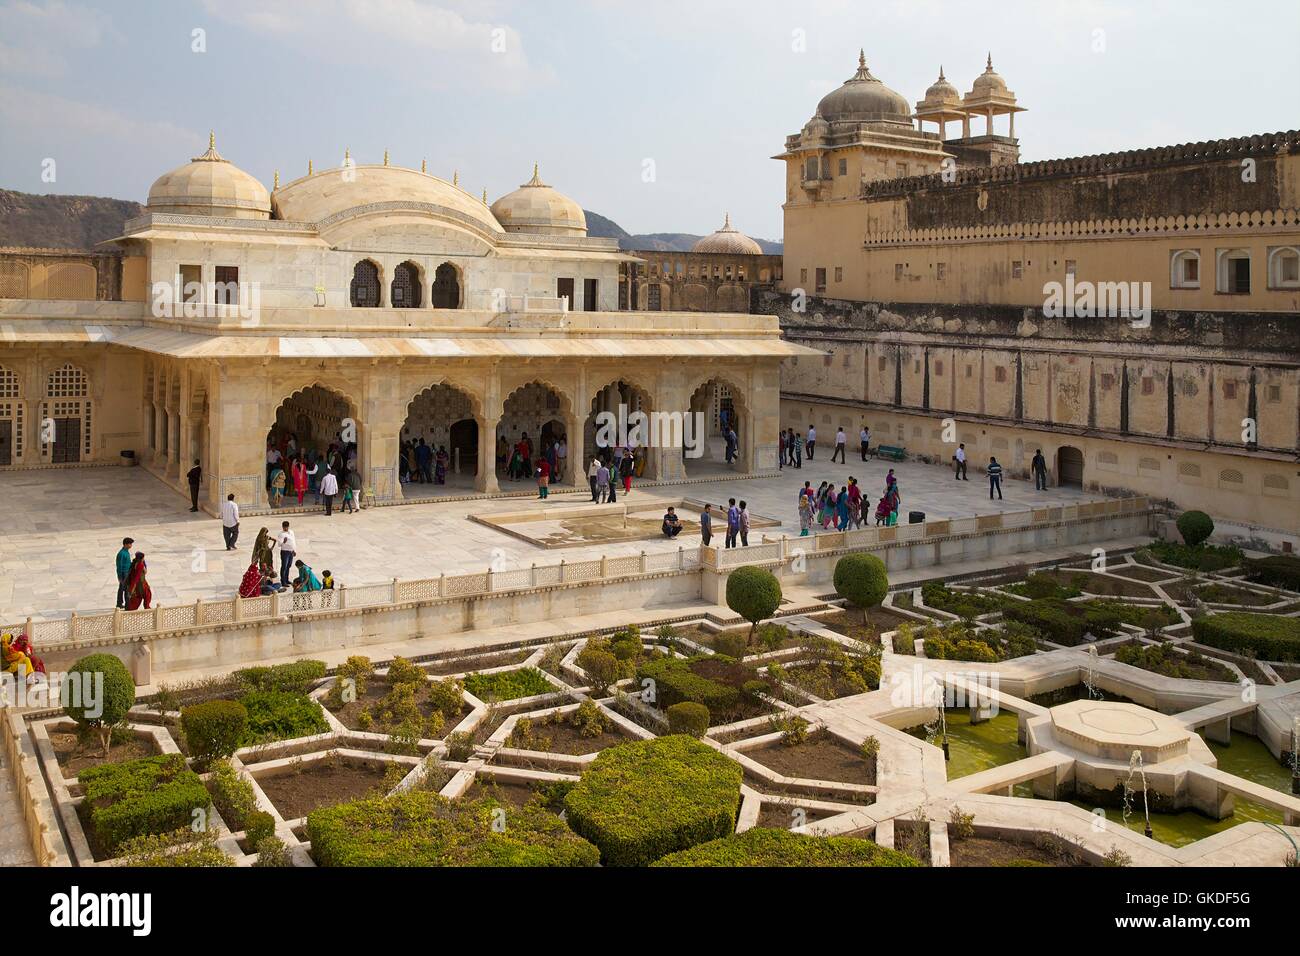 Los jardines y el salón de los espejos, Sheesh Mahal, el Fuerte Amber, Jaipur, Rajasthan, India Foto de stock